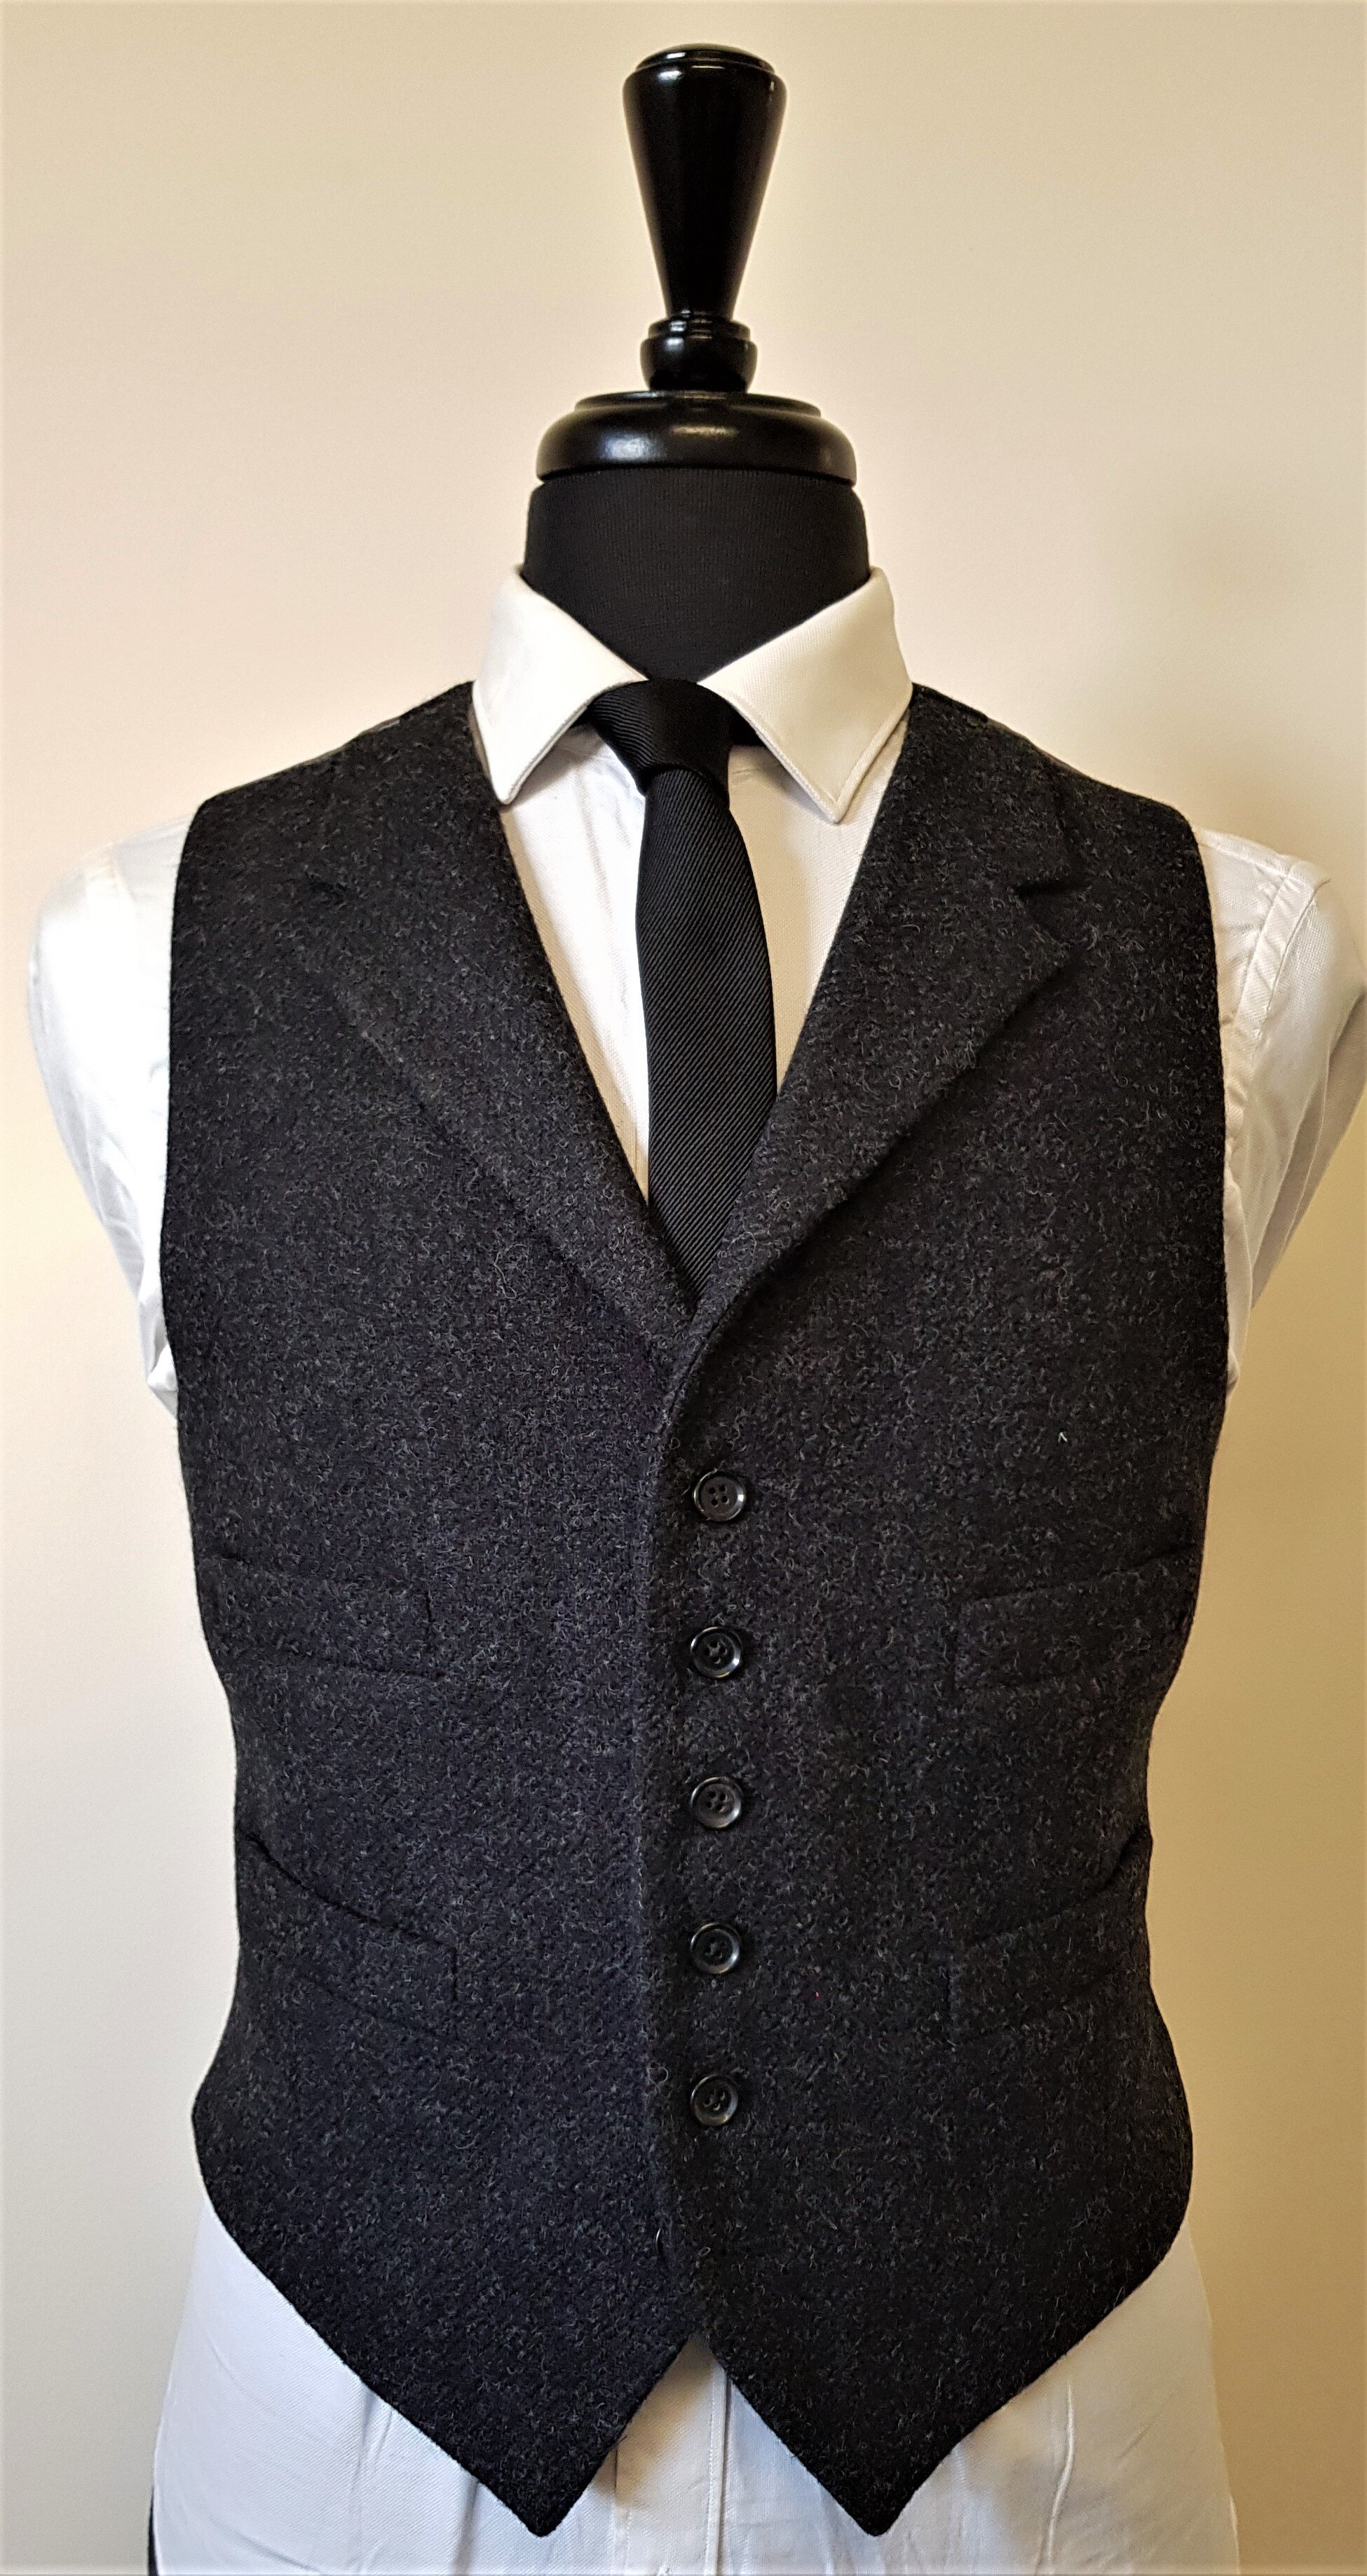 3 Piece Suit in Charcoal Shetland Tweed (16).jpg